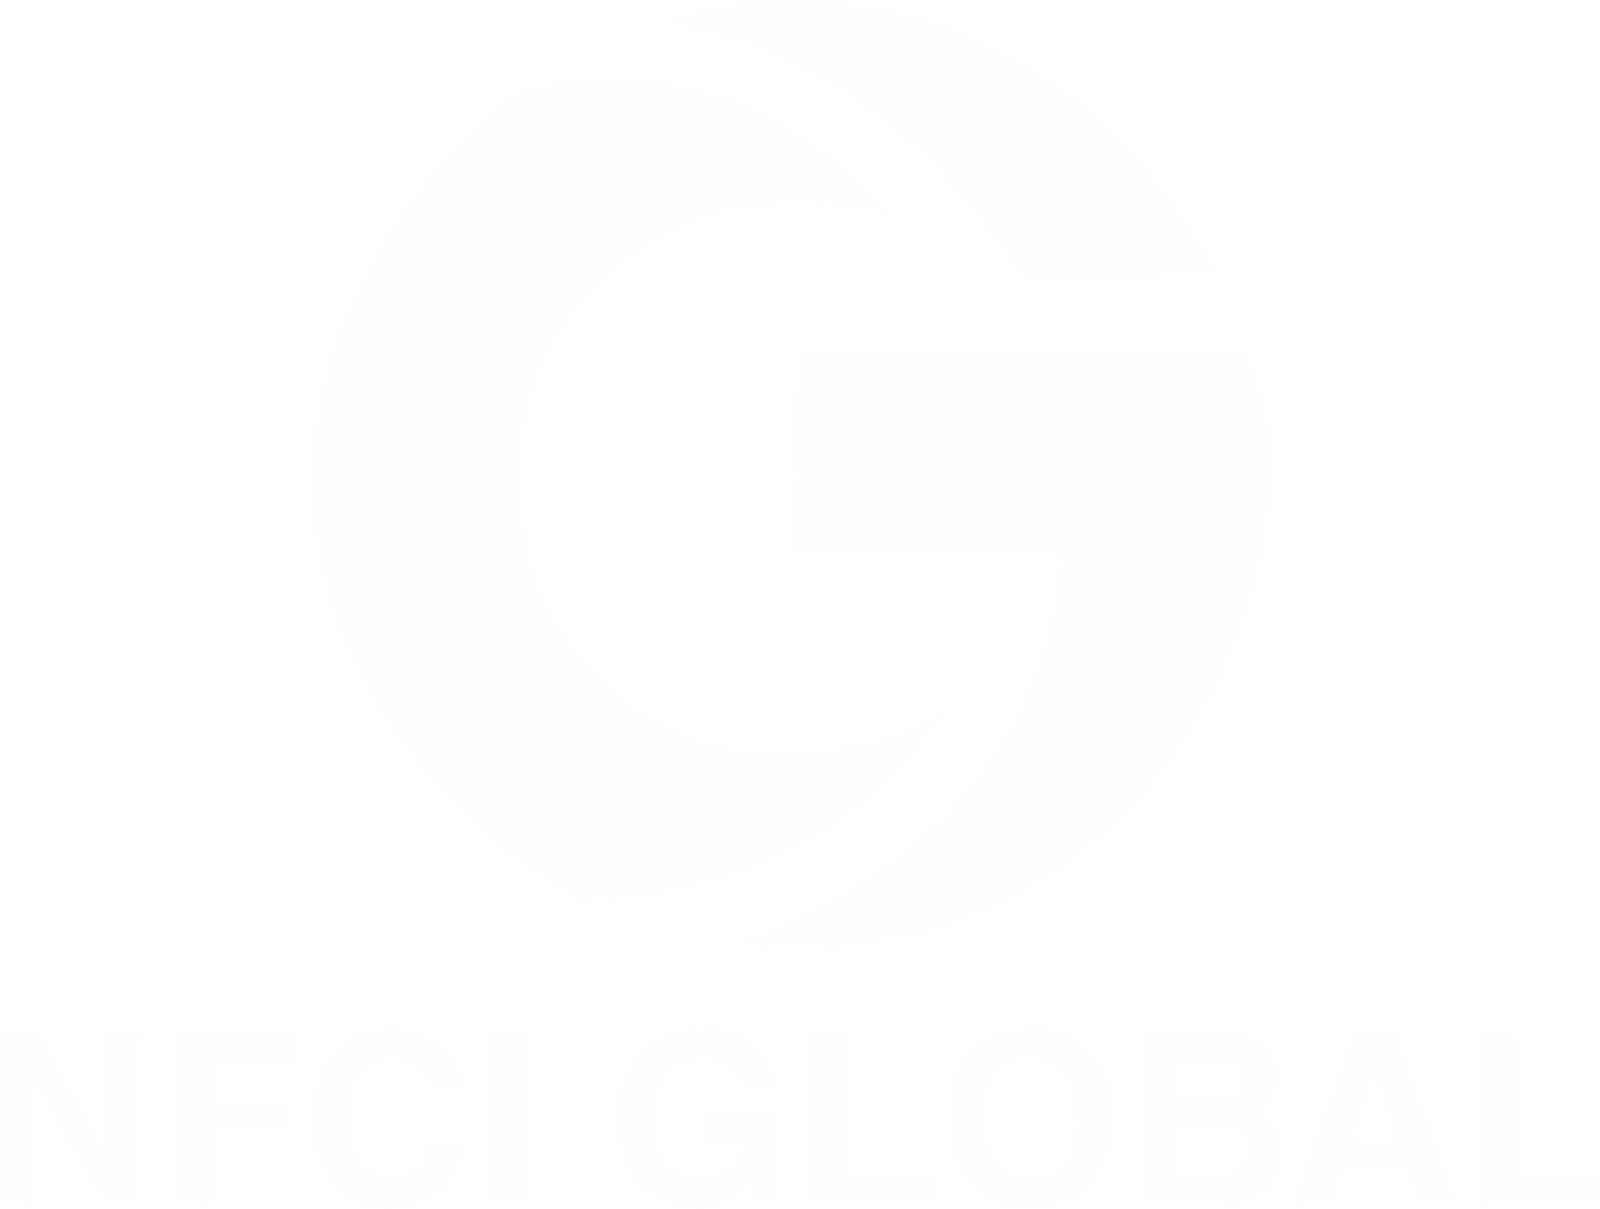 NFCI GLOBAL